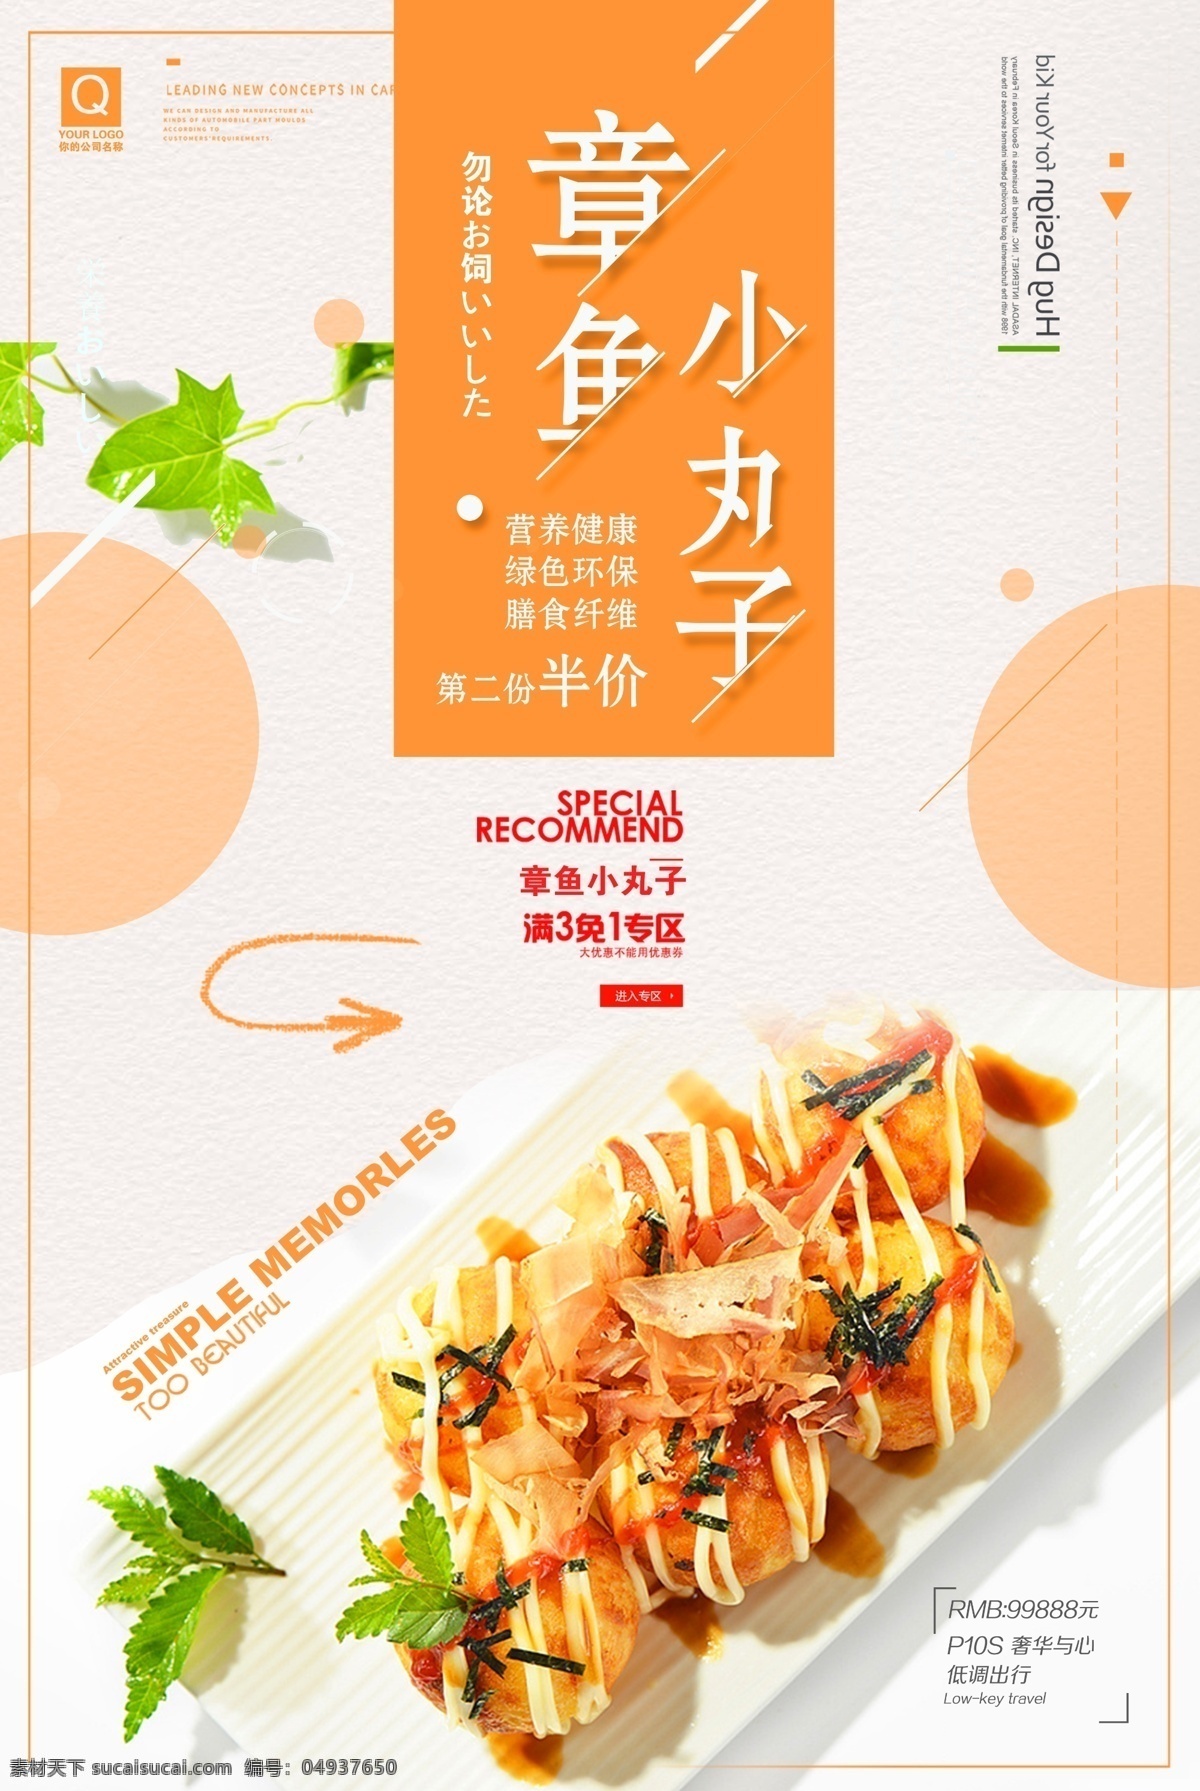 日式 料理 章鱼 小 丸子 章鱼小丸子 餐饮 促销 折扣海报